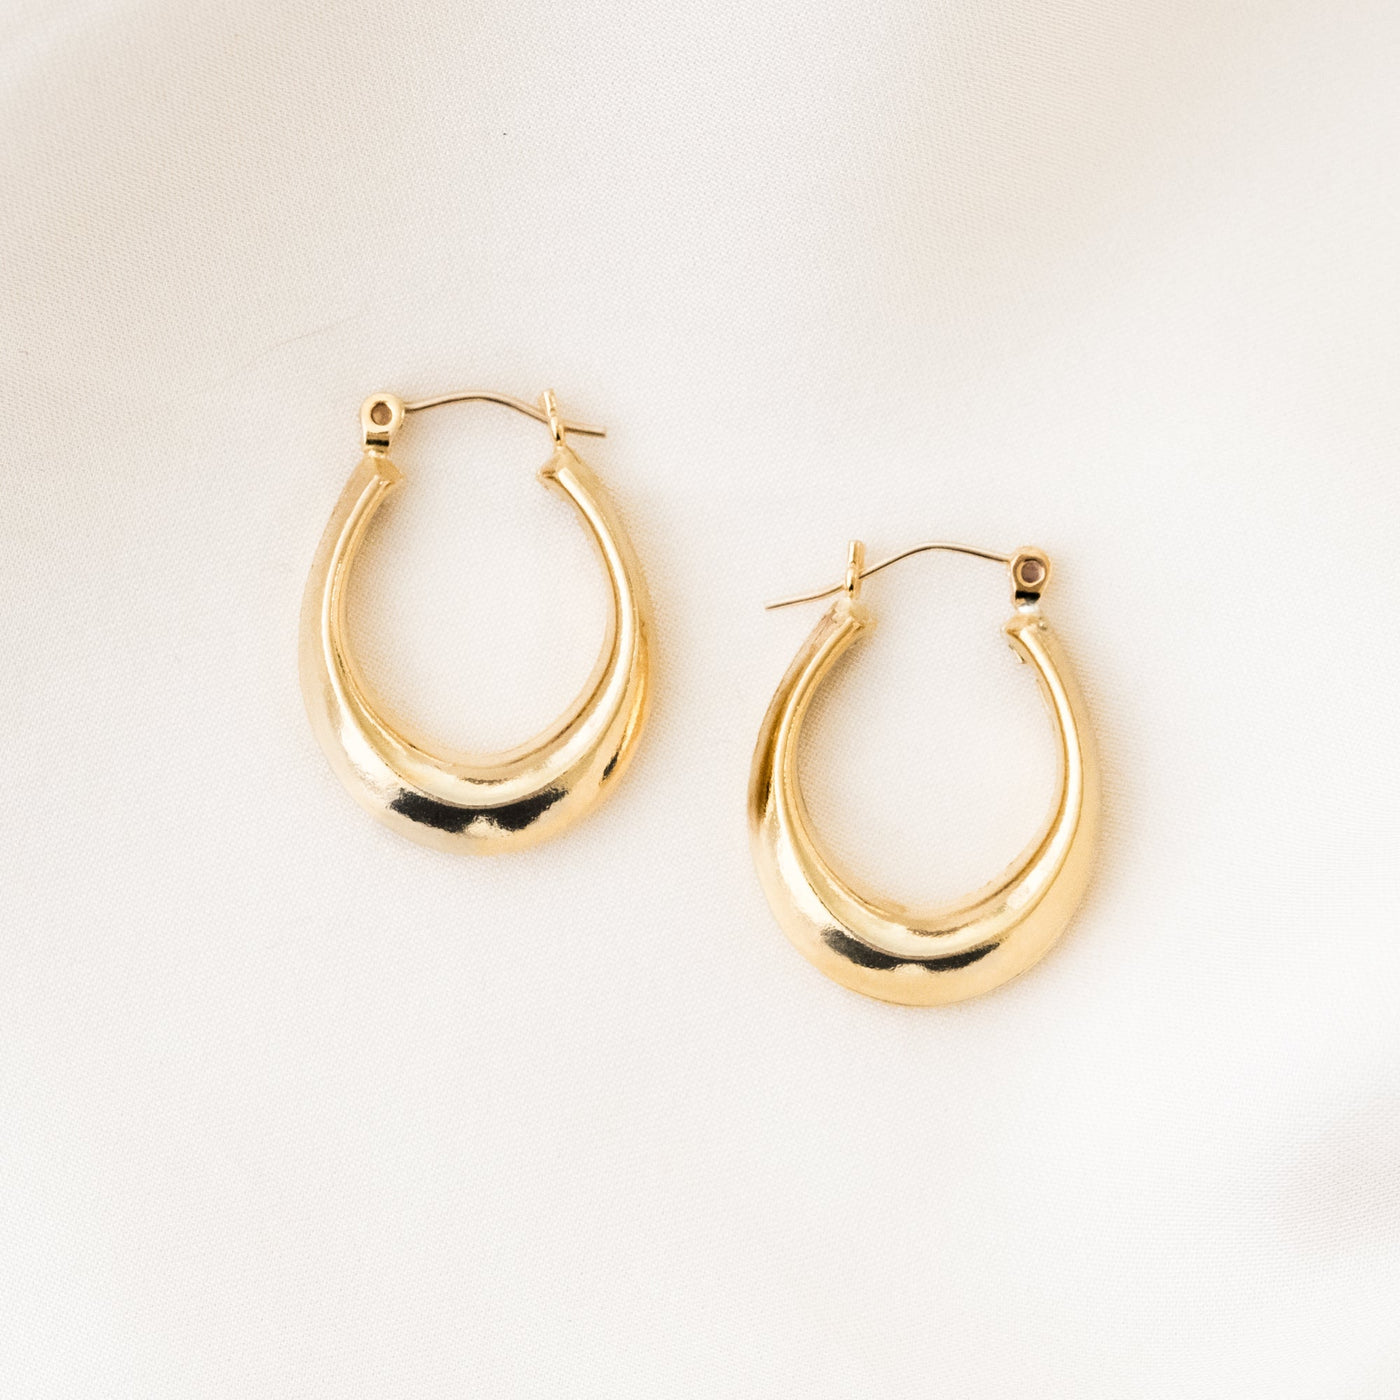 Oval Modern Hoop Earrings | Simple & Dainty Jewelry